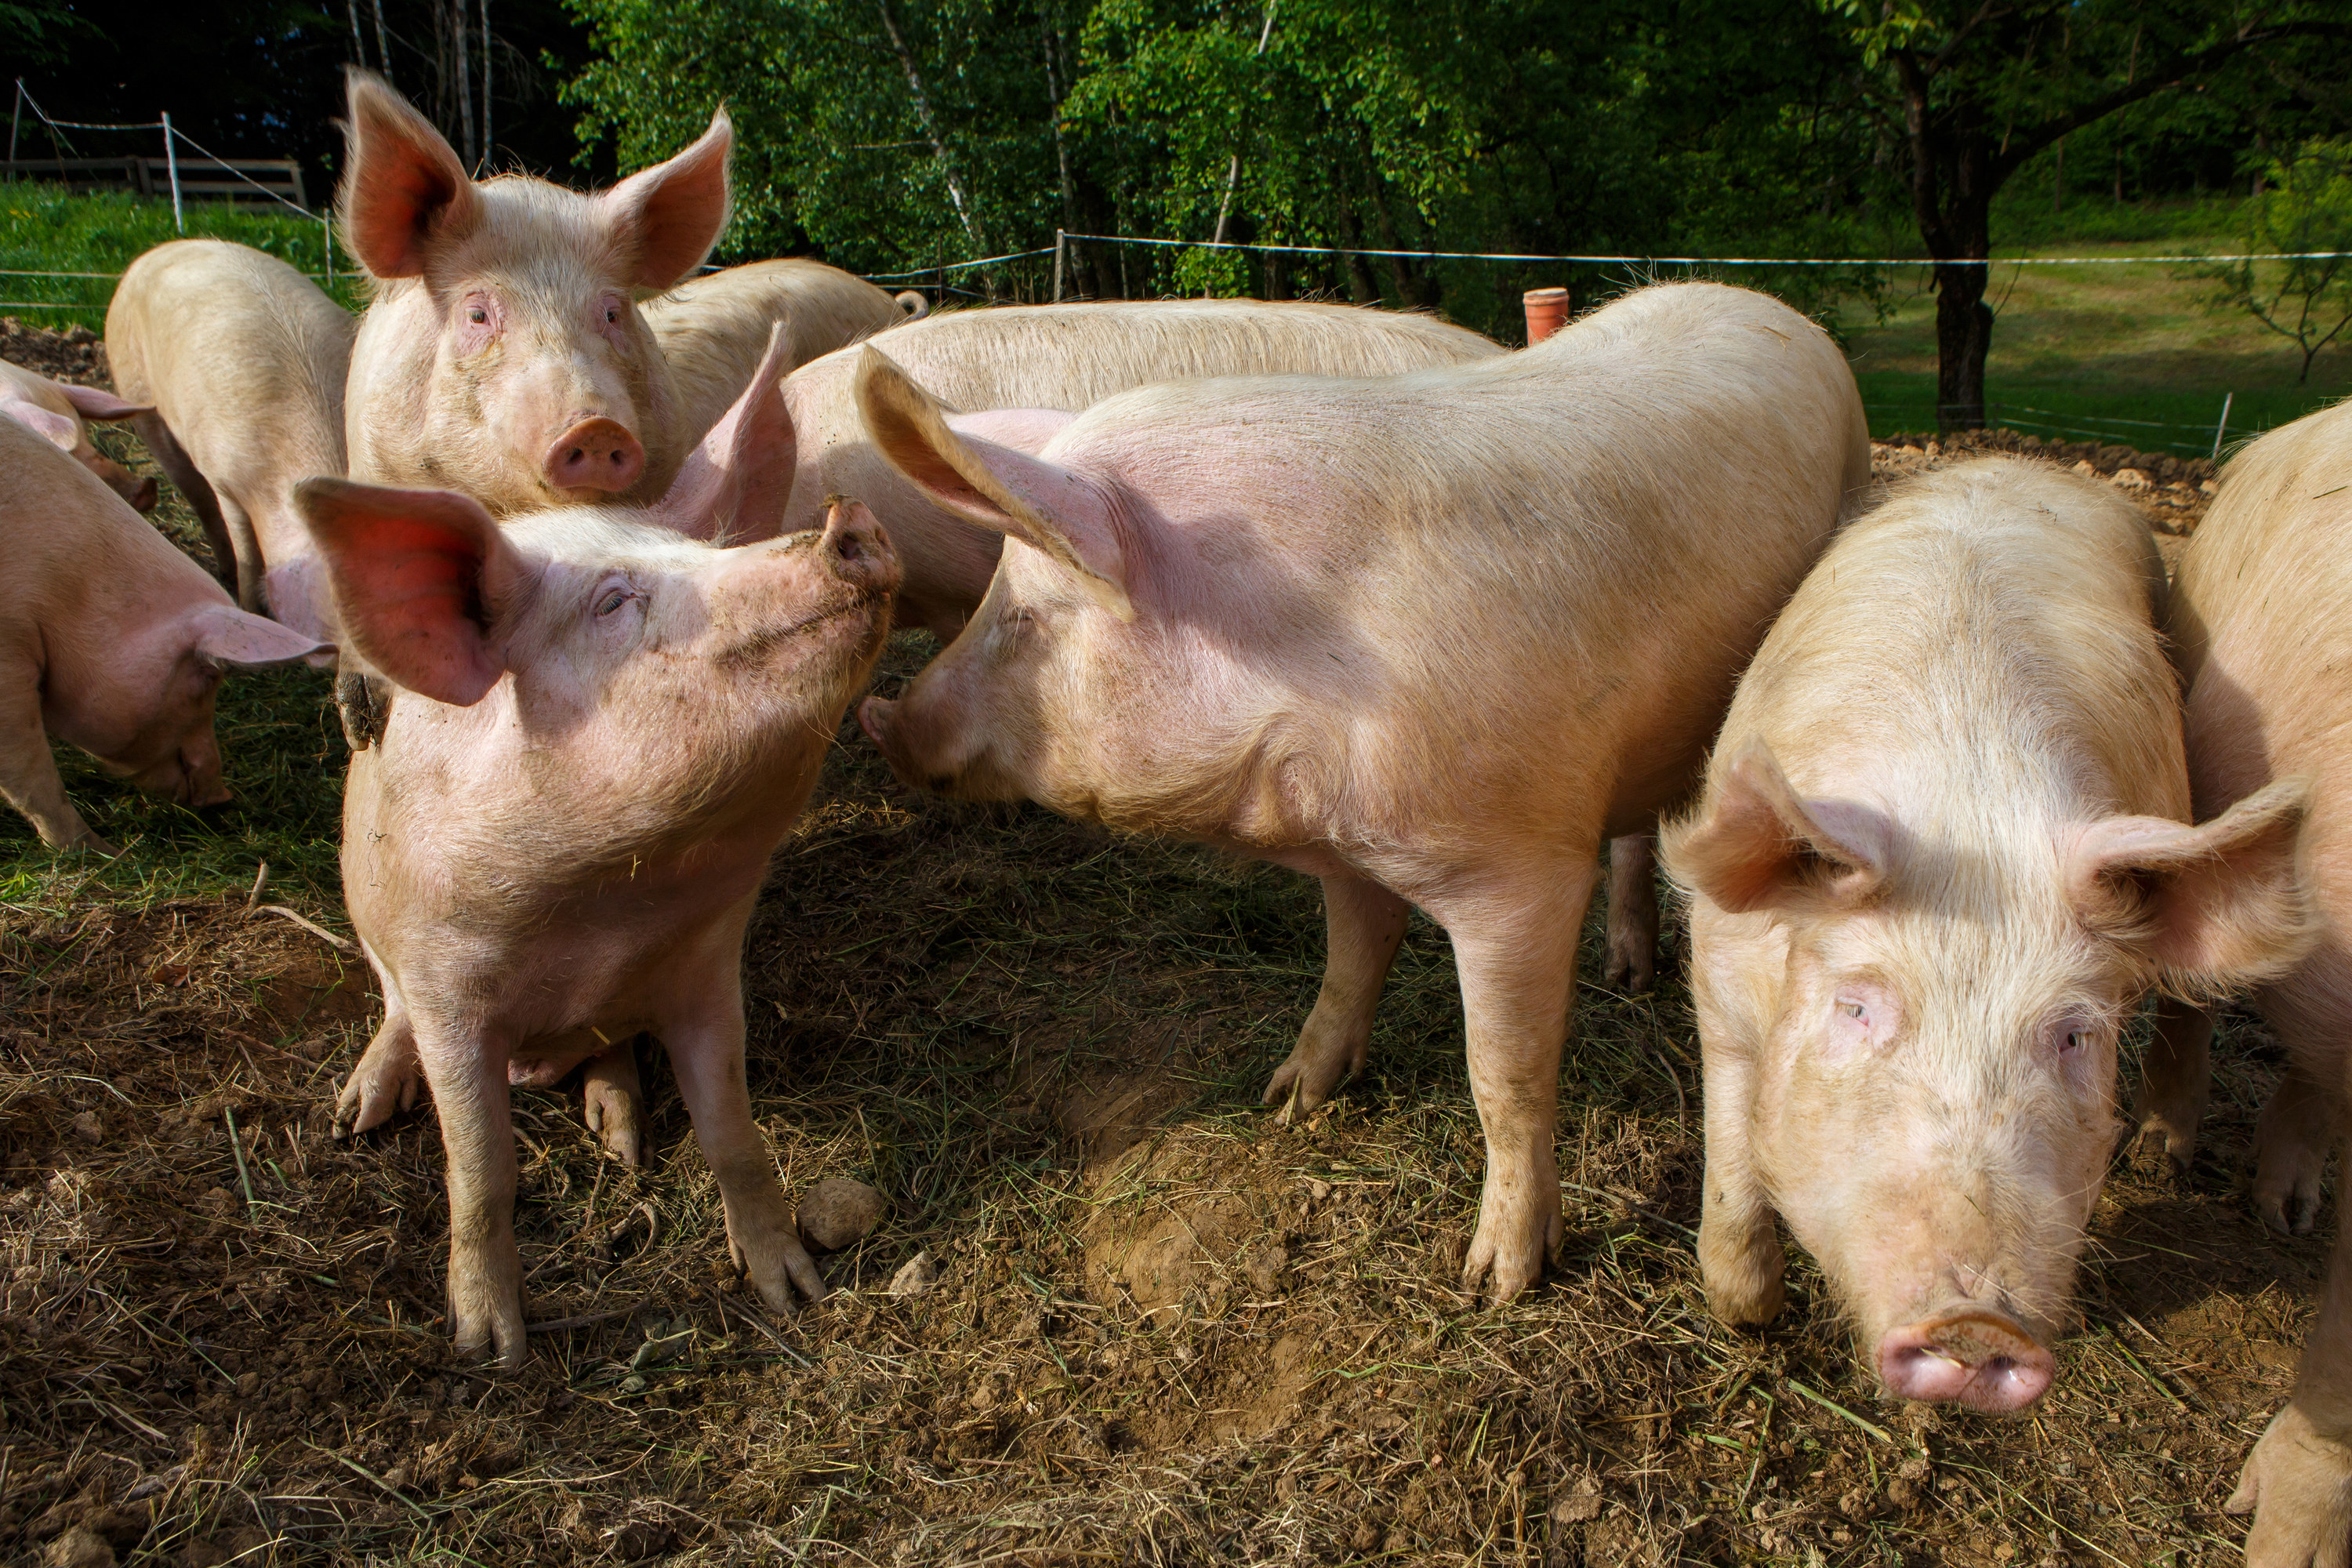 Pigs on a pig farm